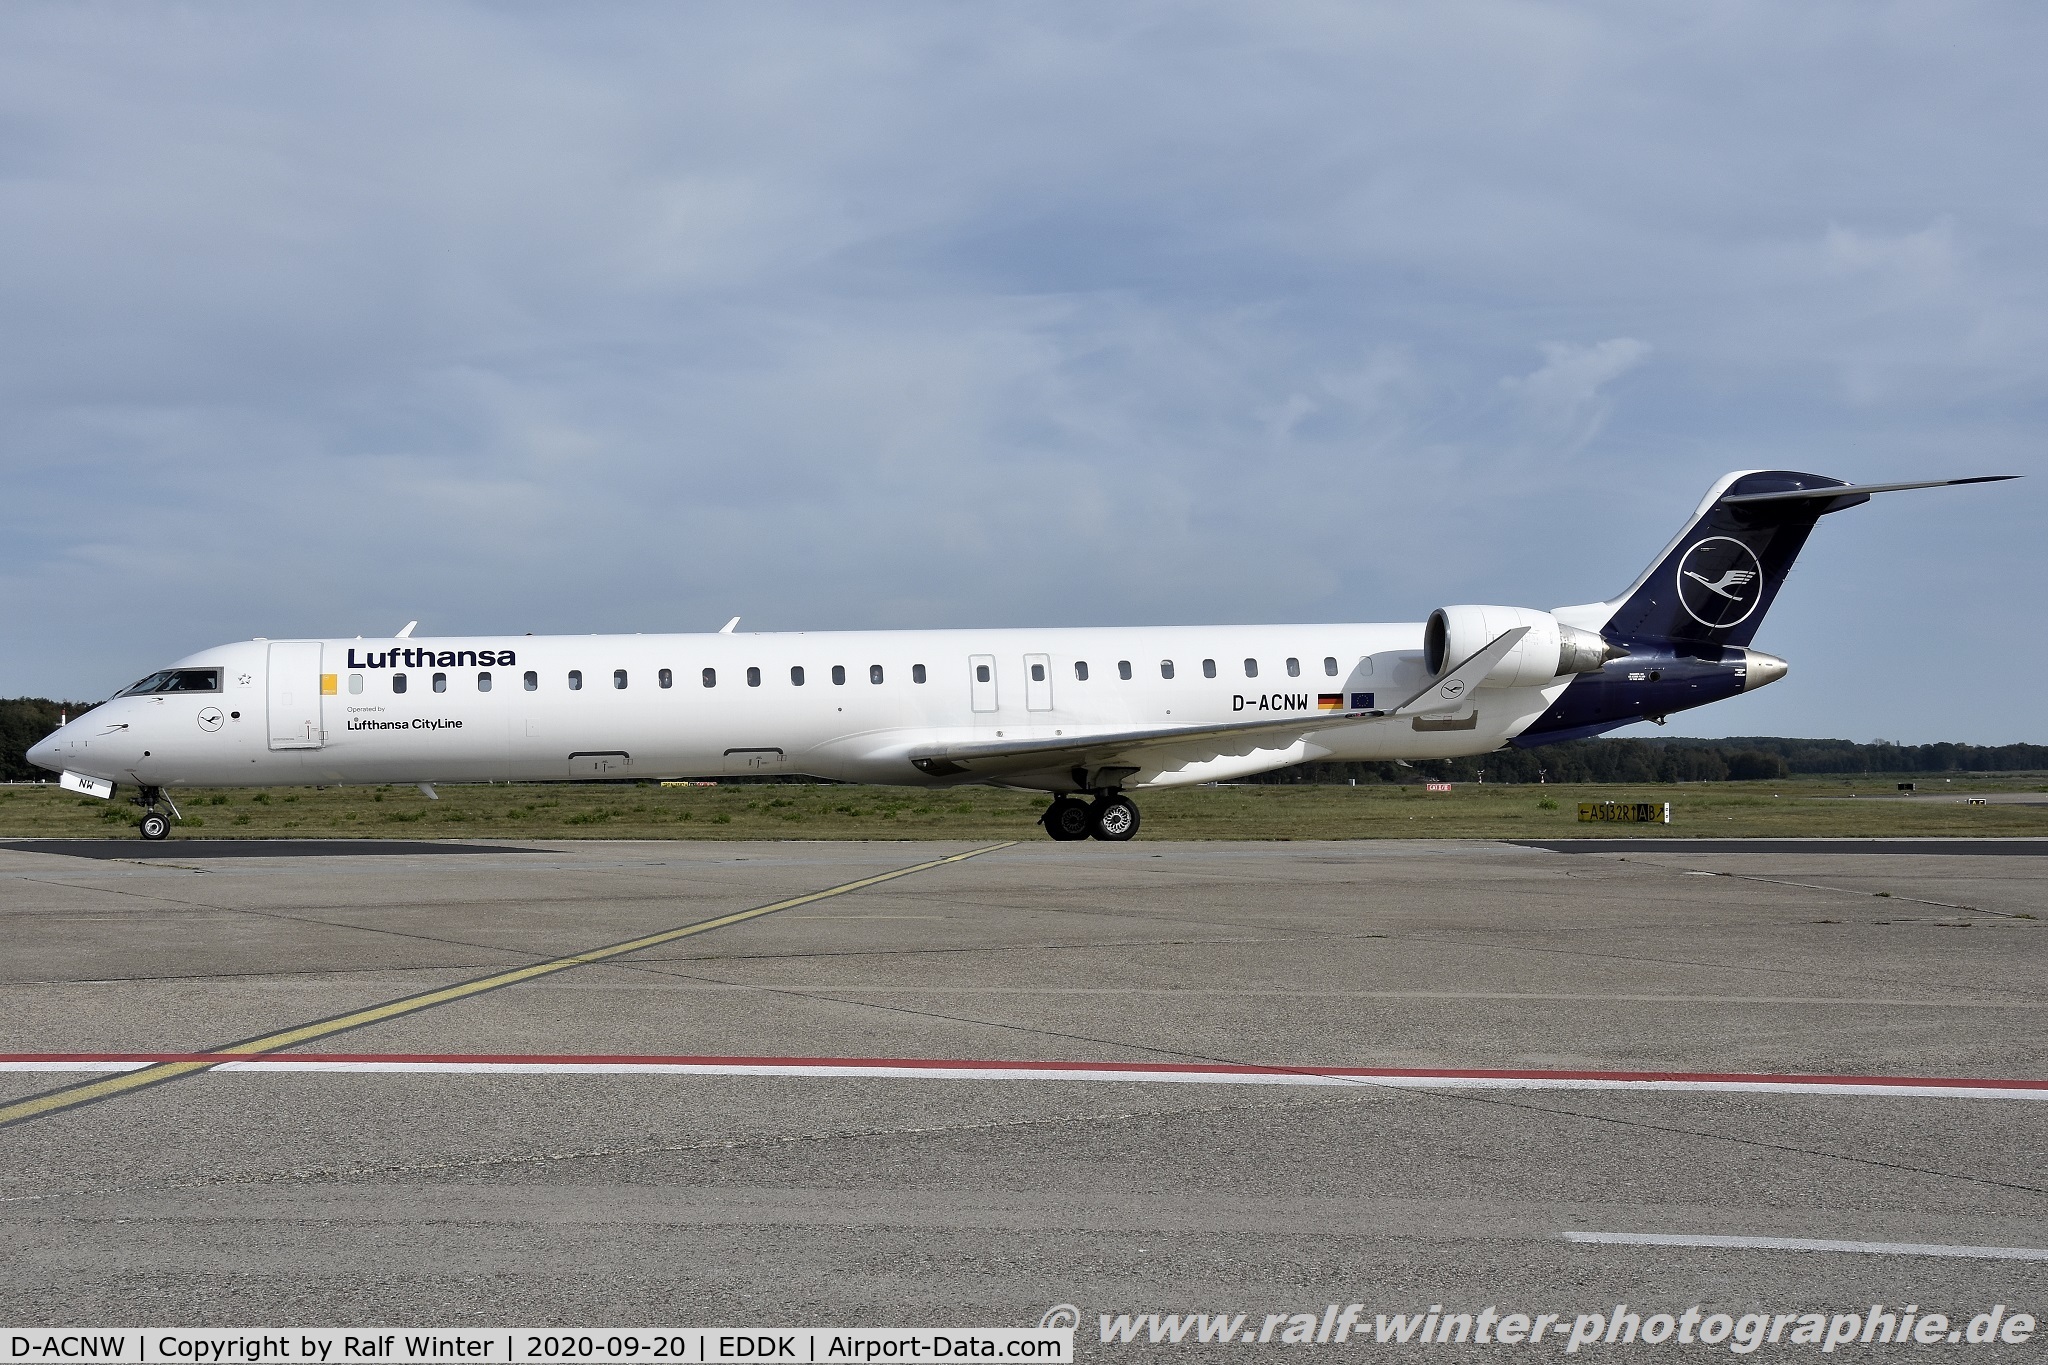 D-ACNW, 2011 Bombardier CRJ-900LR (CL-600-2D24) C/N 15269, Bombardier CL-600-2D24 CRJ-900LR - CL CLH Lufthansa CityLine - 15269 - D-ACNW - 20.09.2020 - CGN